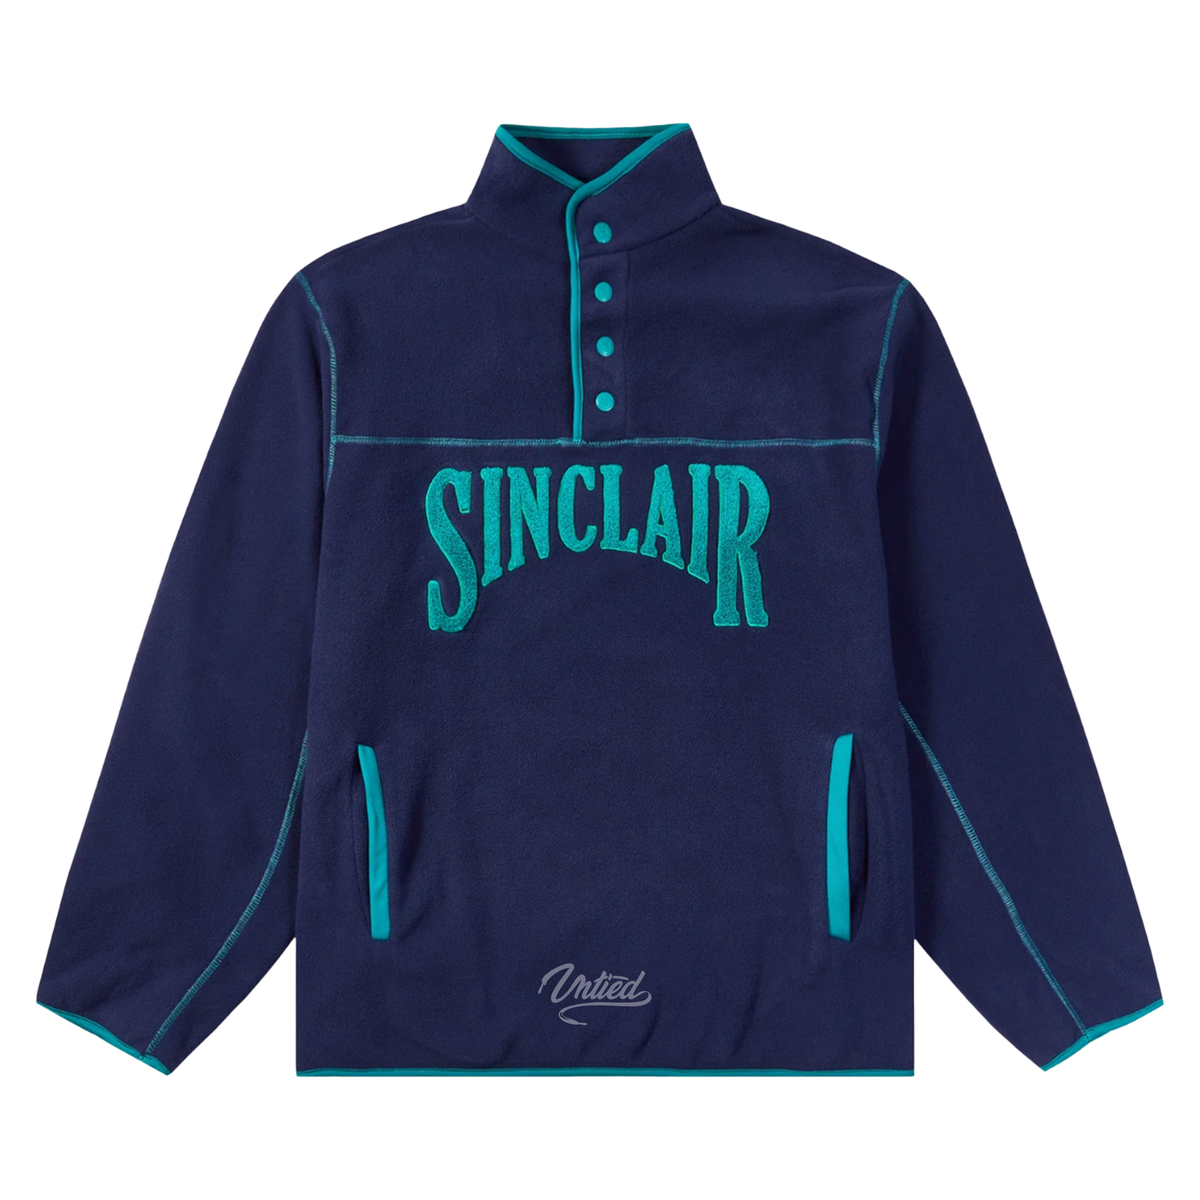 Sinclair Polar Fleece 1/4 Button Up "Navy"